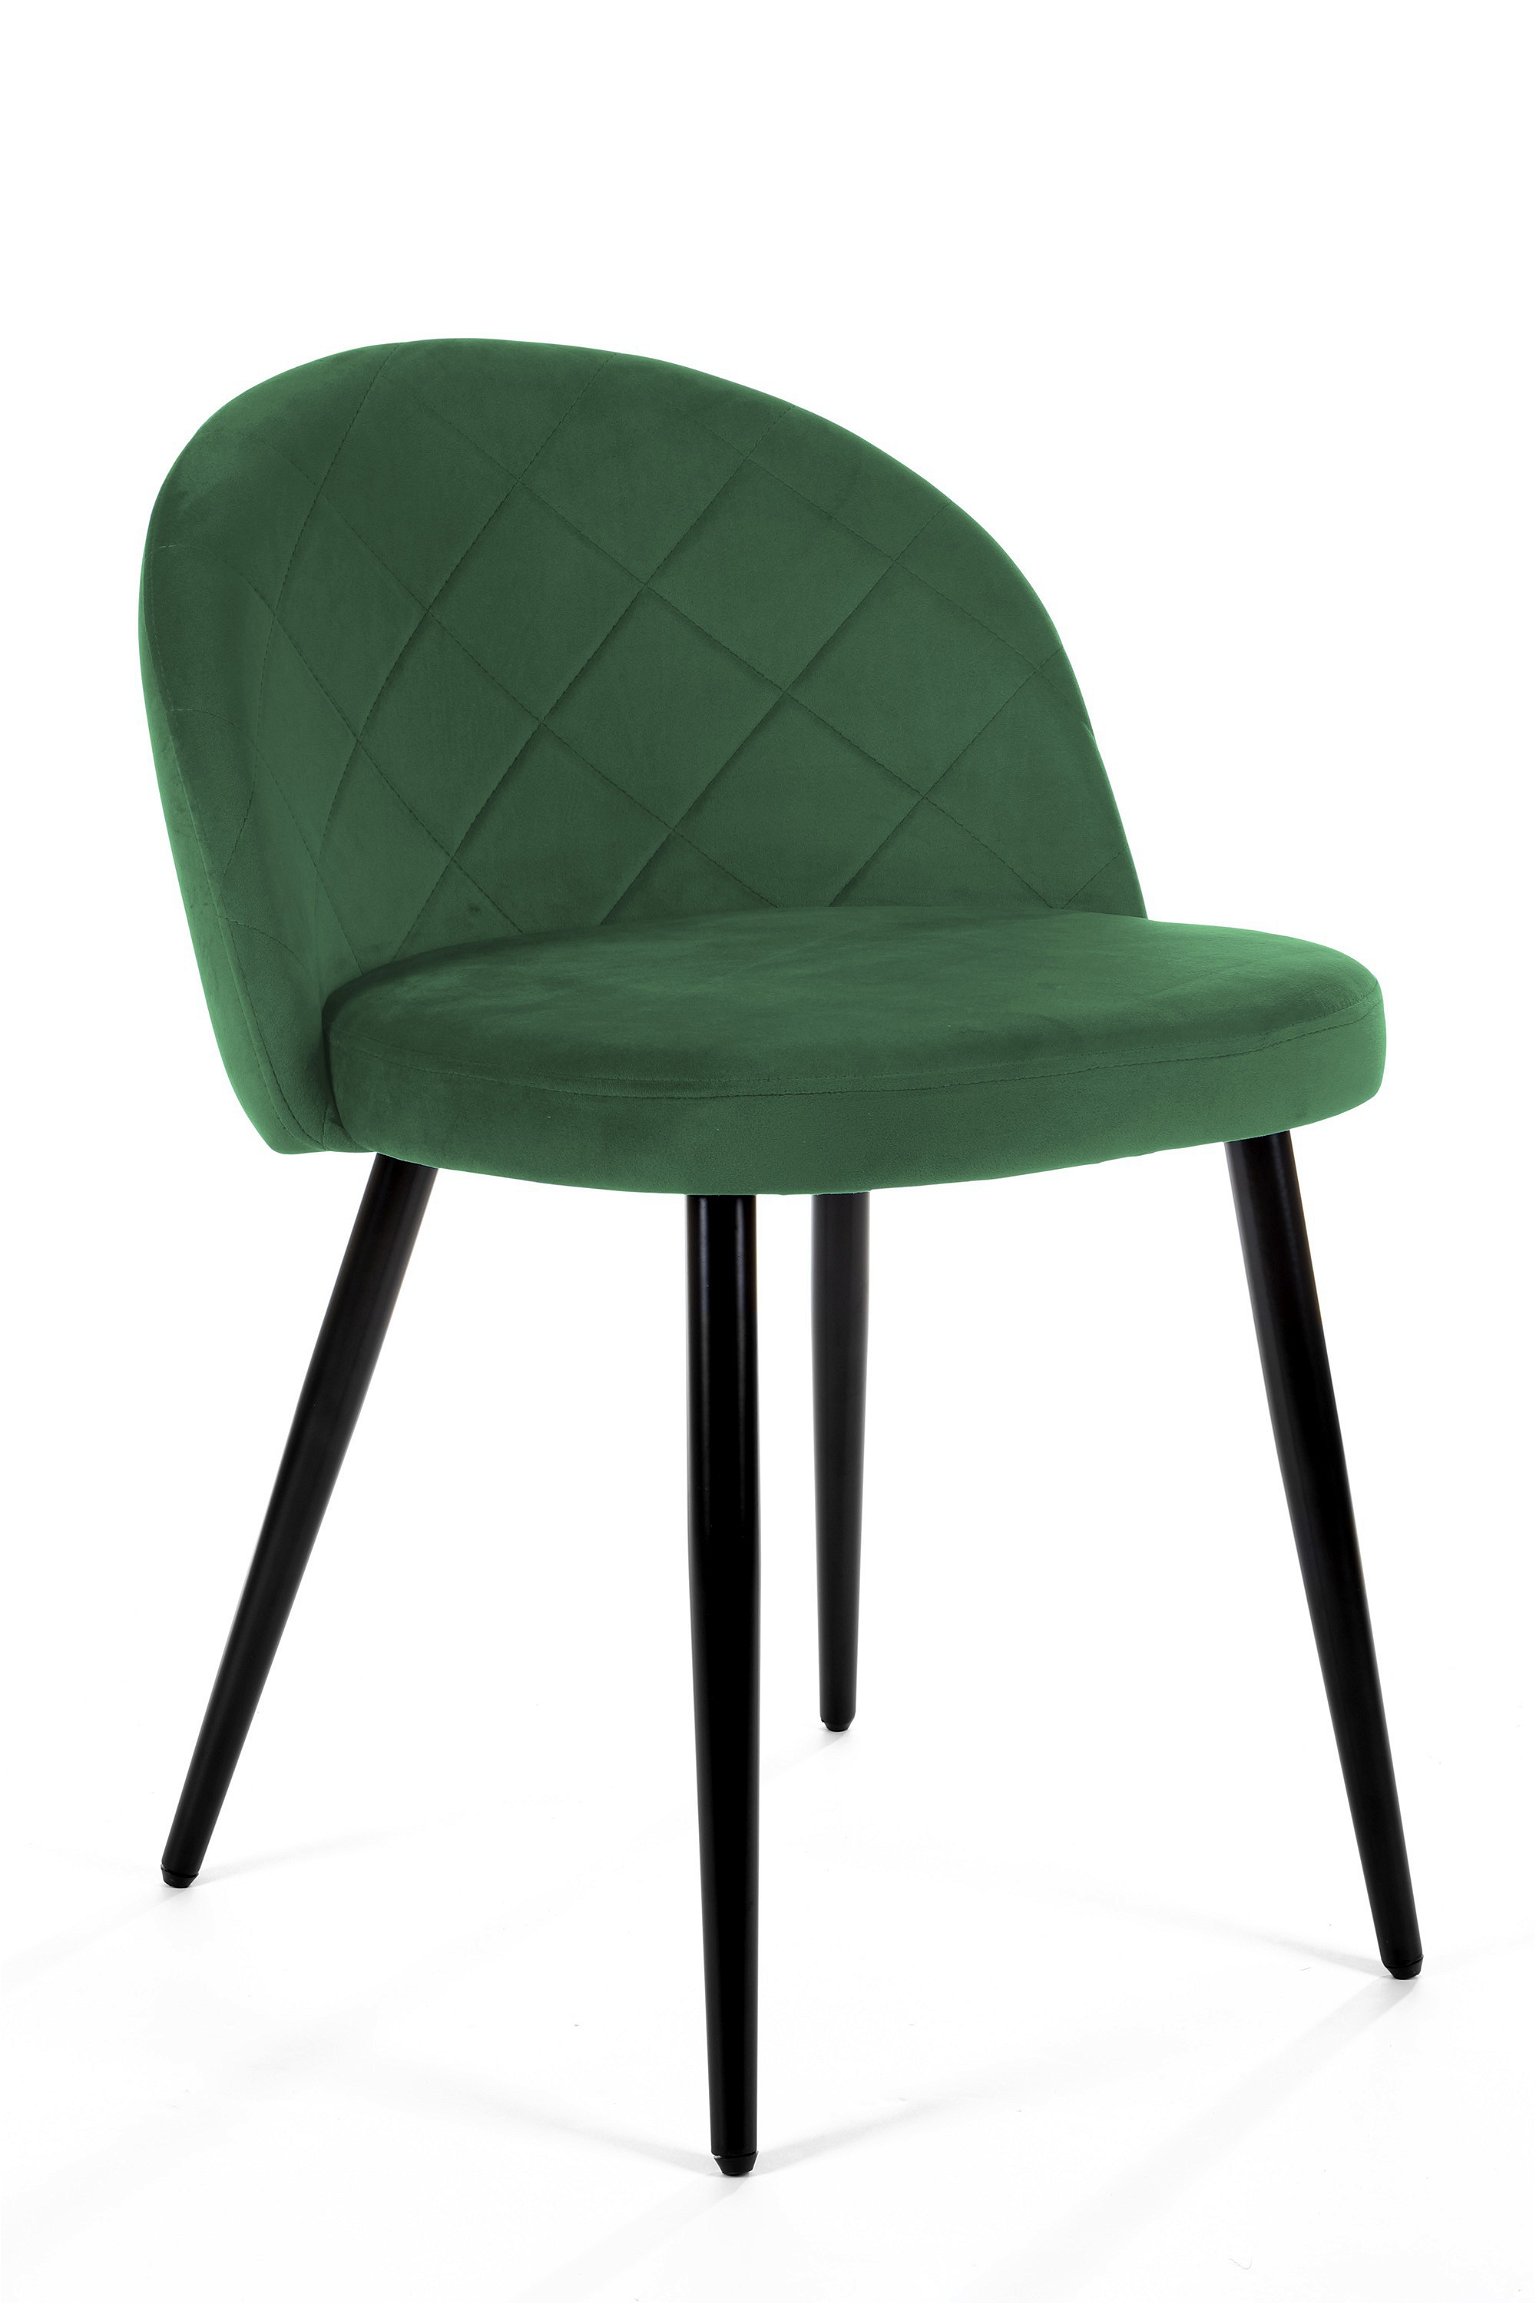 4-ių kėdžių komplektas SJ.077, žalias